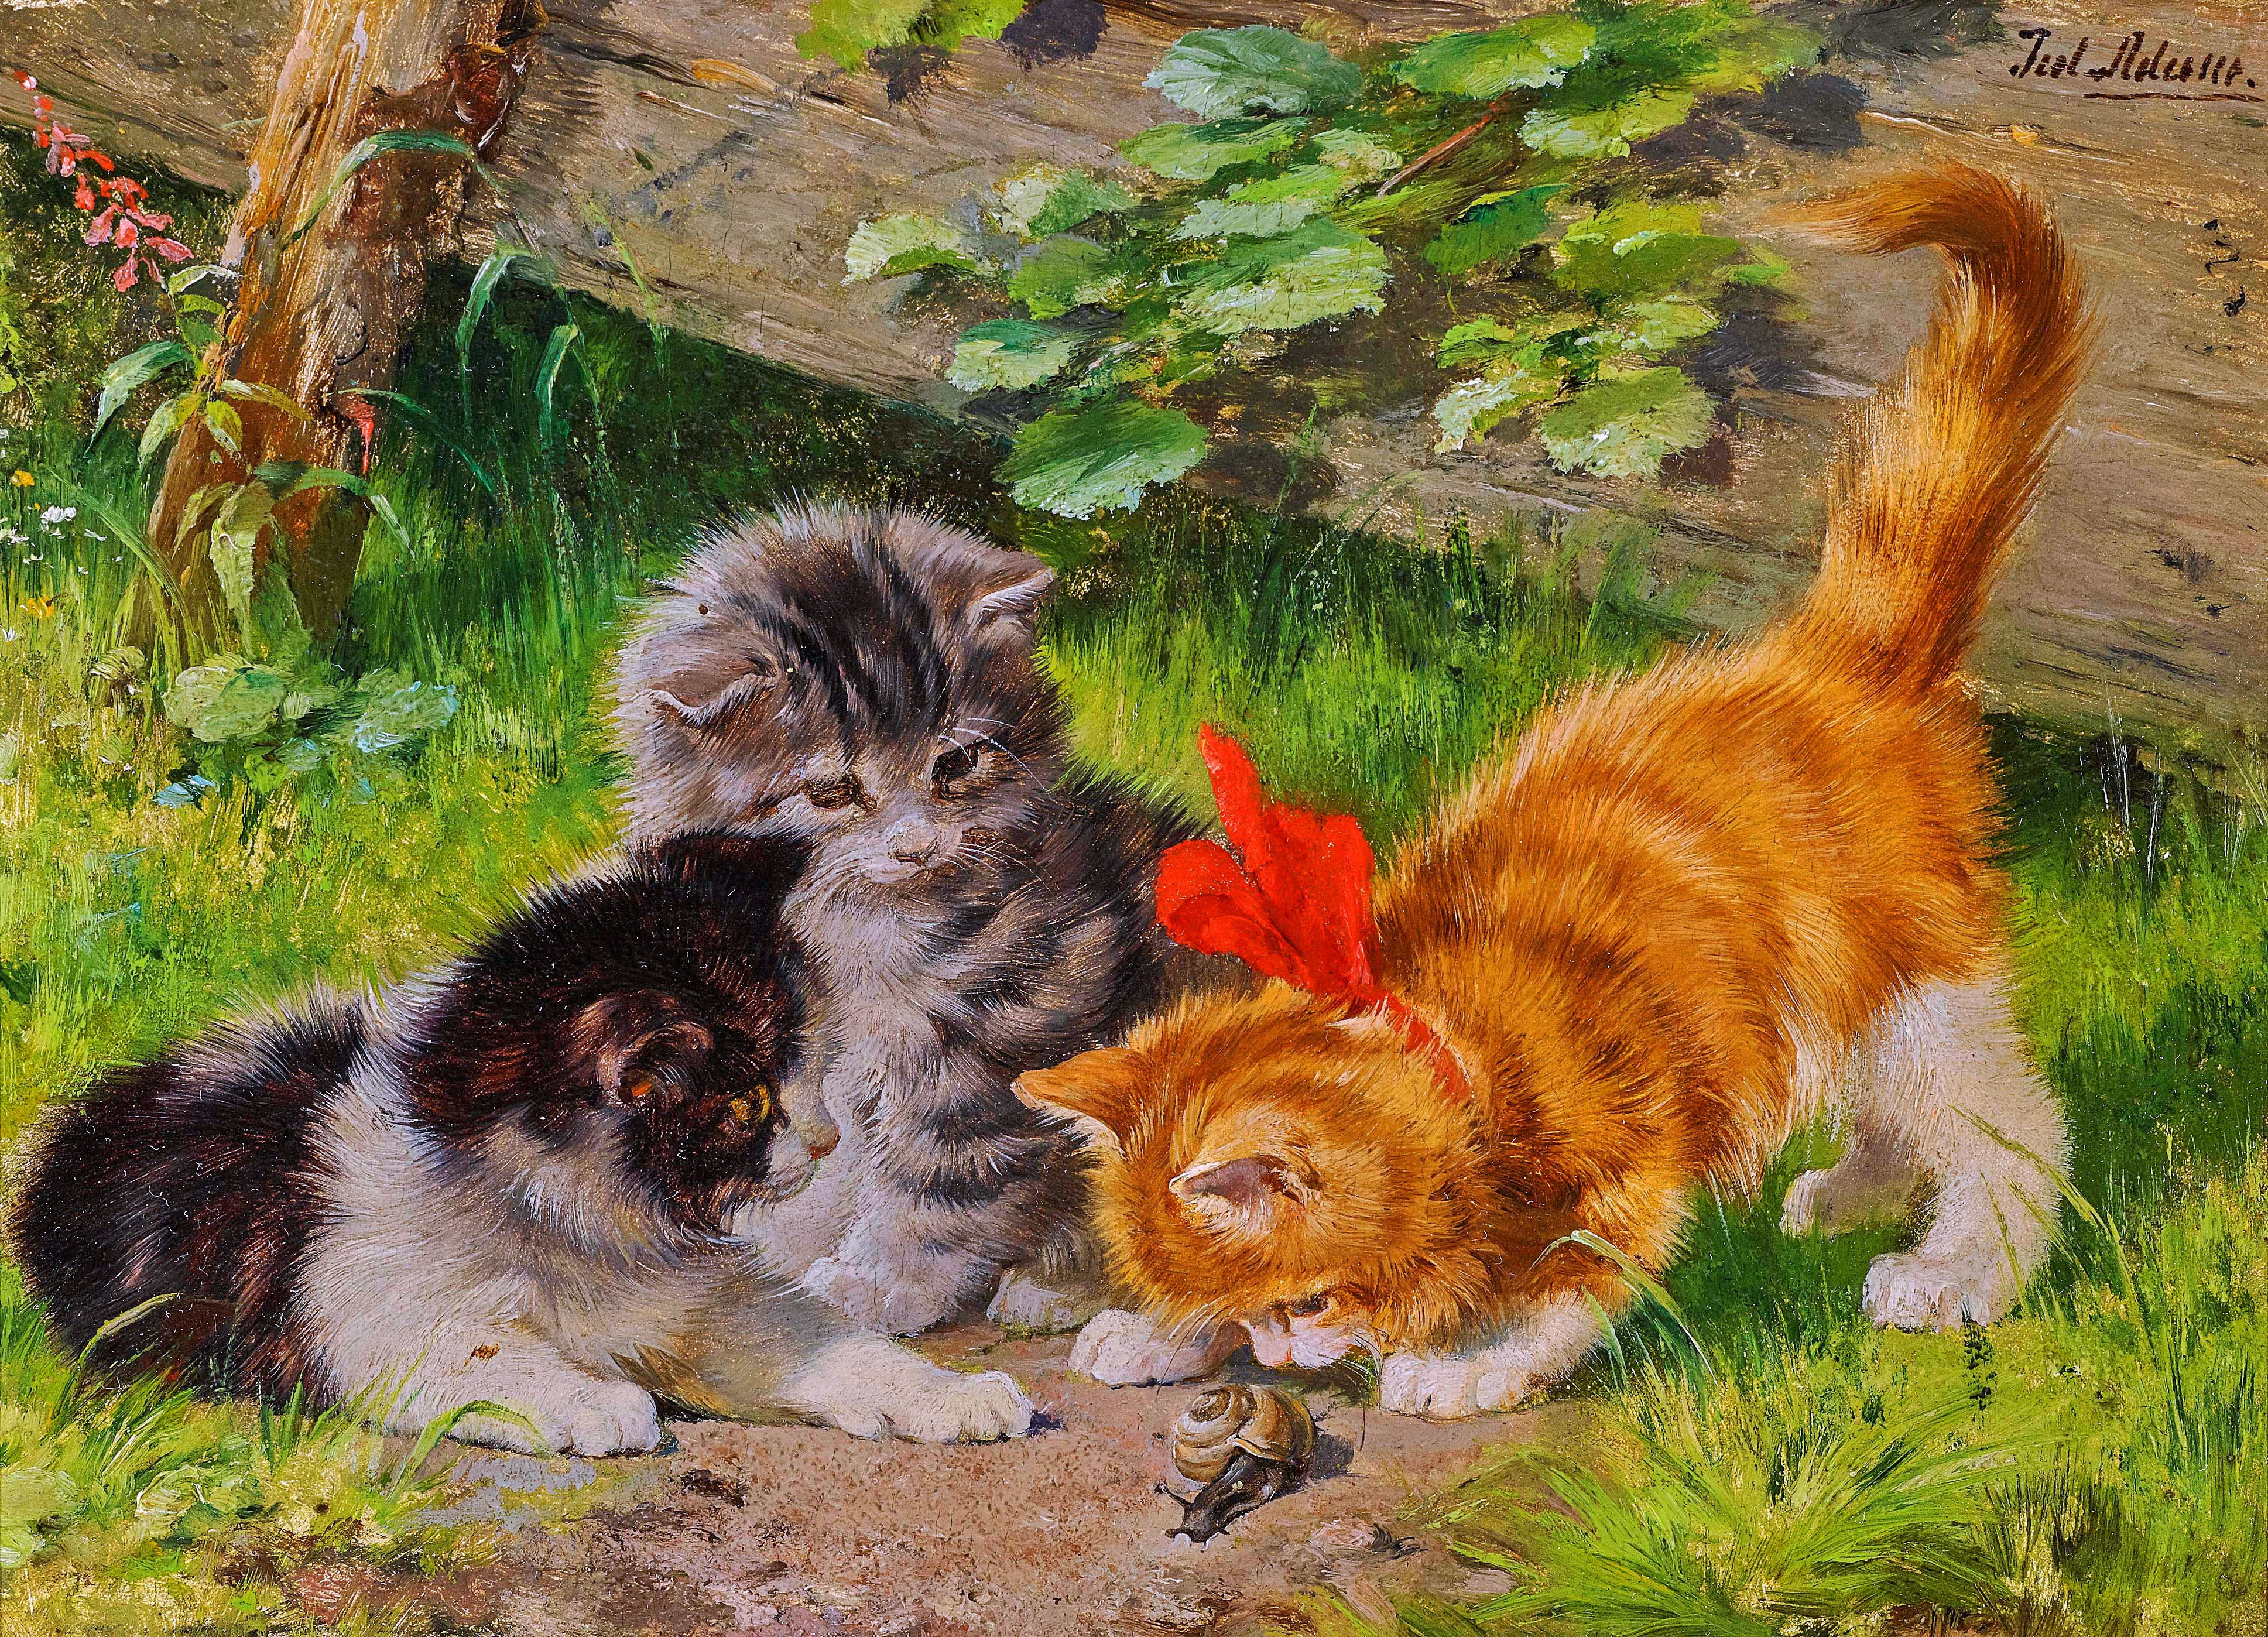 Кошка с котятами детский сад. Джулиус Адамс художник.